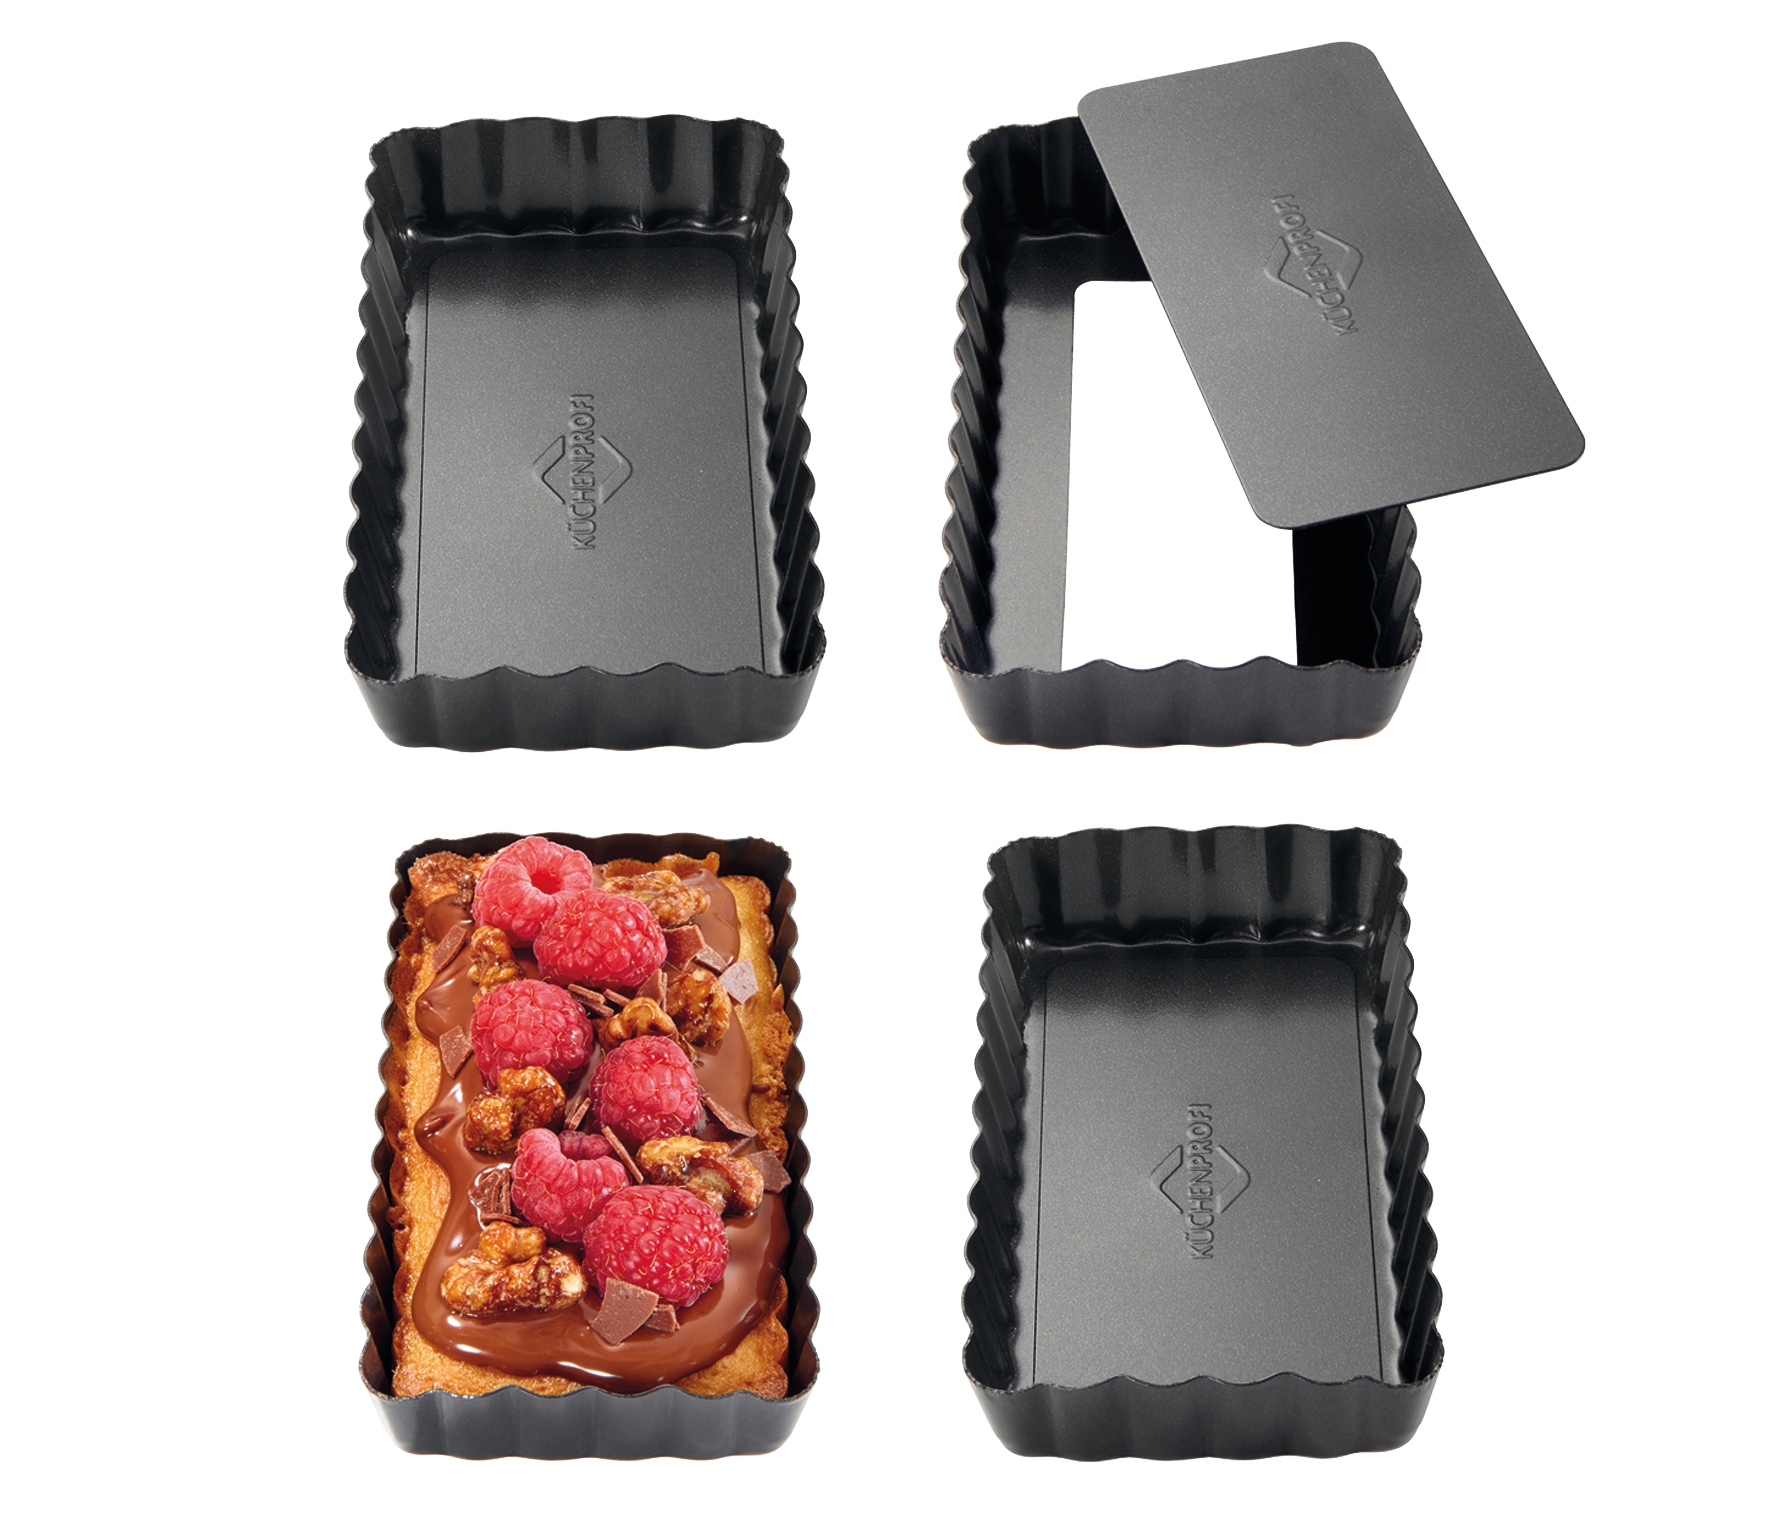 Tarteletteformen rechteckig, 4er Set BAKE MINI  auch für Obstkuchen  + Boden herausnehmbar 6x11cm Quiche Lorraine, Tarte Tatin, Erdbeertartelettes